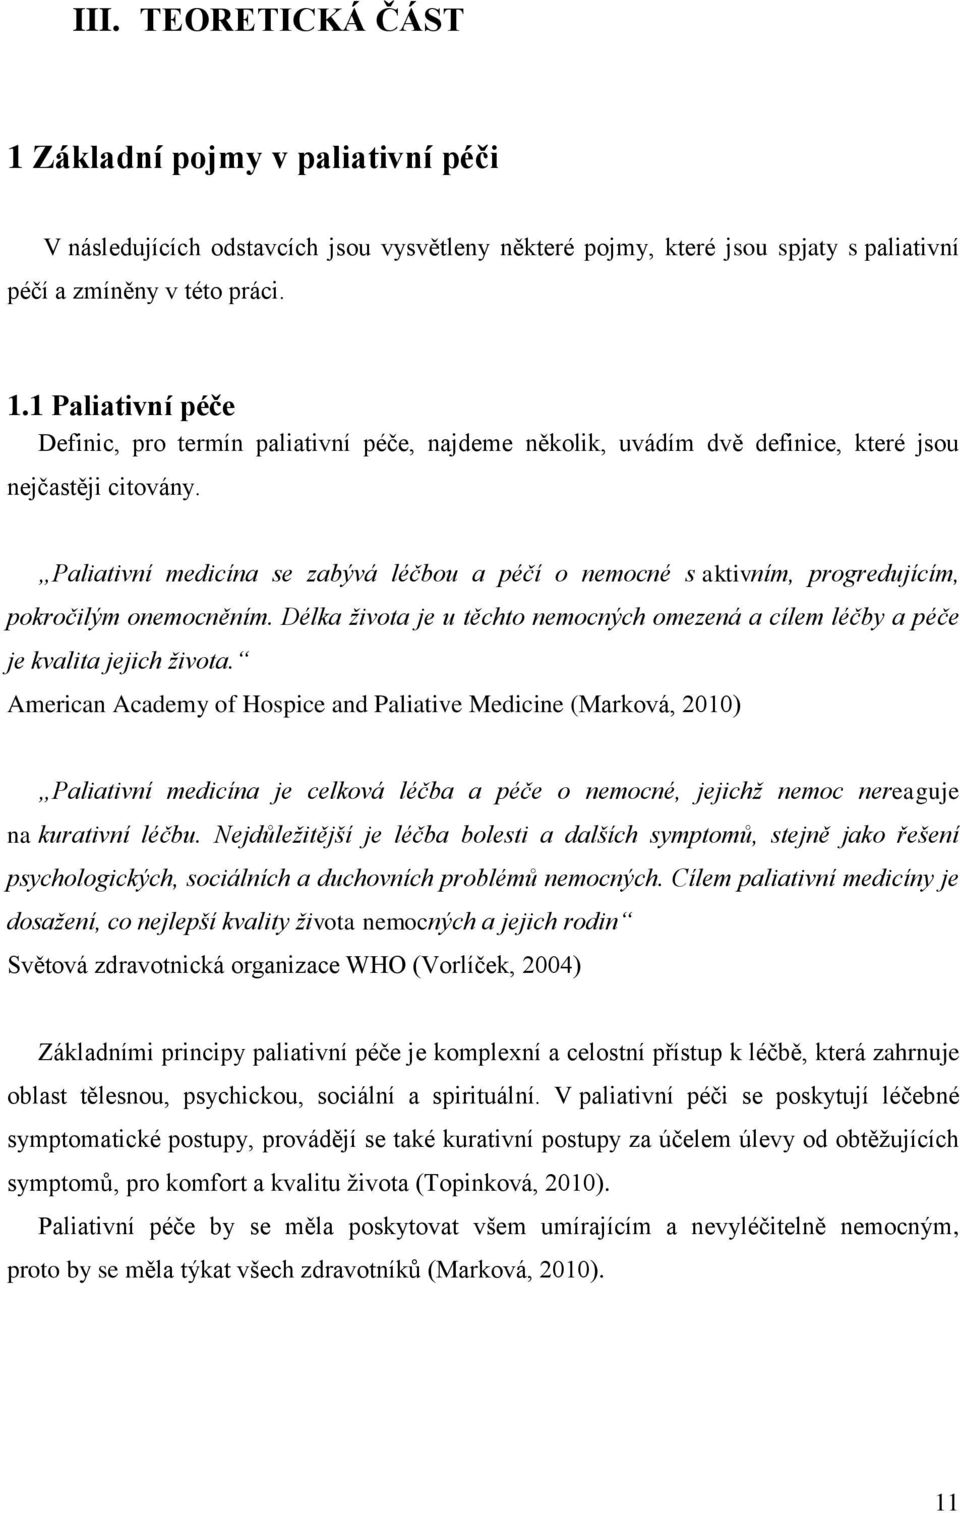 American Academy of Hospice and Paliative Medicine (Marková, 2010) Paliativní medicína je celková léčba a péče o nemocné, jejichž nemoc nereaguje na kurativní léčbu.